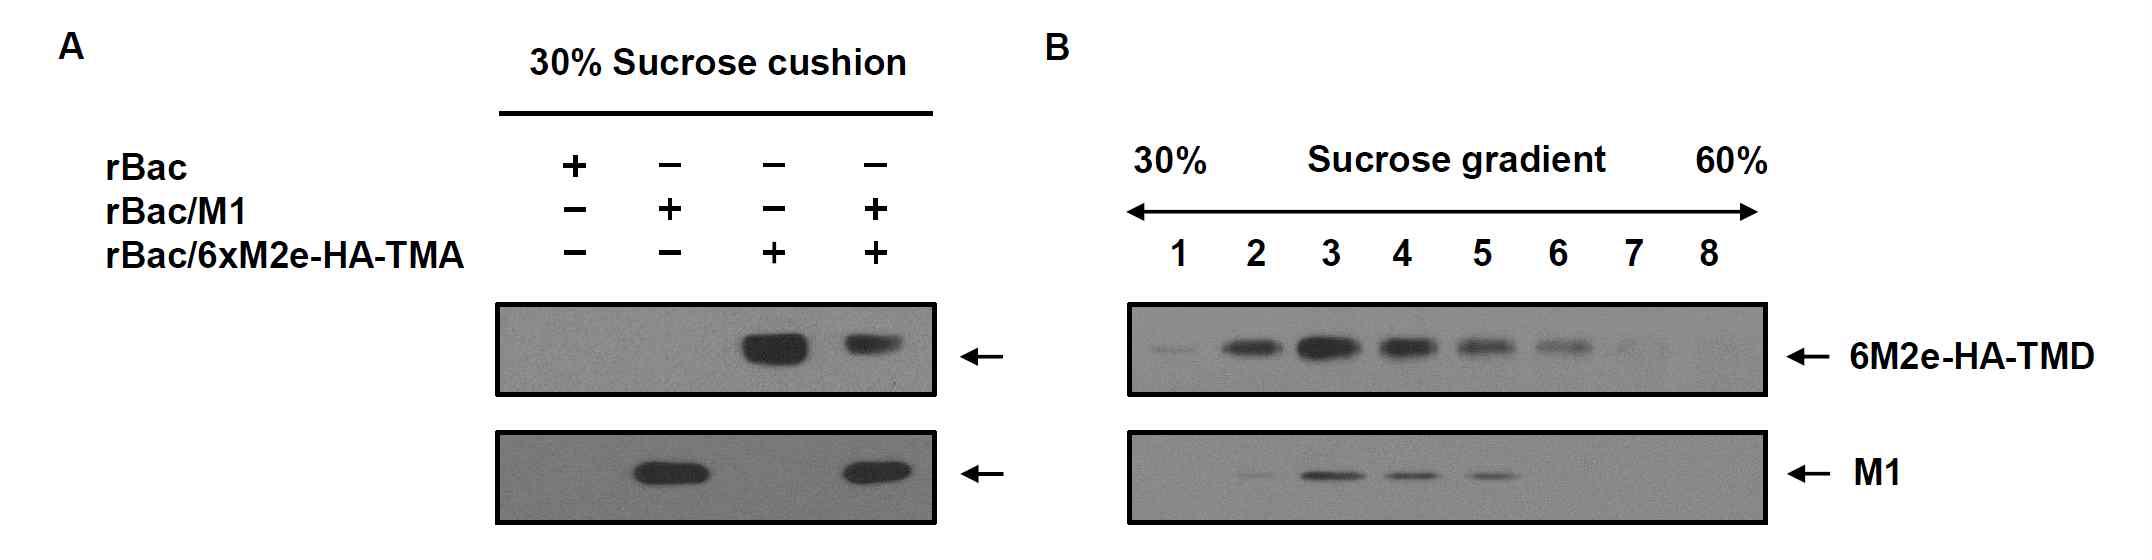 (A) 재조합 배큘로바이러스 rBac/M1, rBac/6xM2e-HA-TMD가 감염된 TN-5B1-4 세포 배양배지를 30% sucrose cushion에서 원심분리하여 침전물을 확보하고 재조합 인플루엔자 바이러스 M1, 6xM2e-HA-TMD 단백질의 존재를 Western blot으로 분석함. (B) Sucrose cushion 침전물을 30-60% sucrose density gradient 초원심분리 방법으로 분획하고 Western blot으로 분석함.